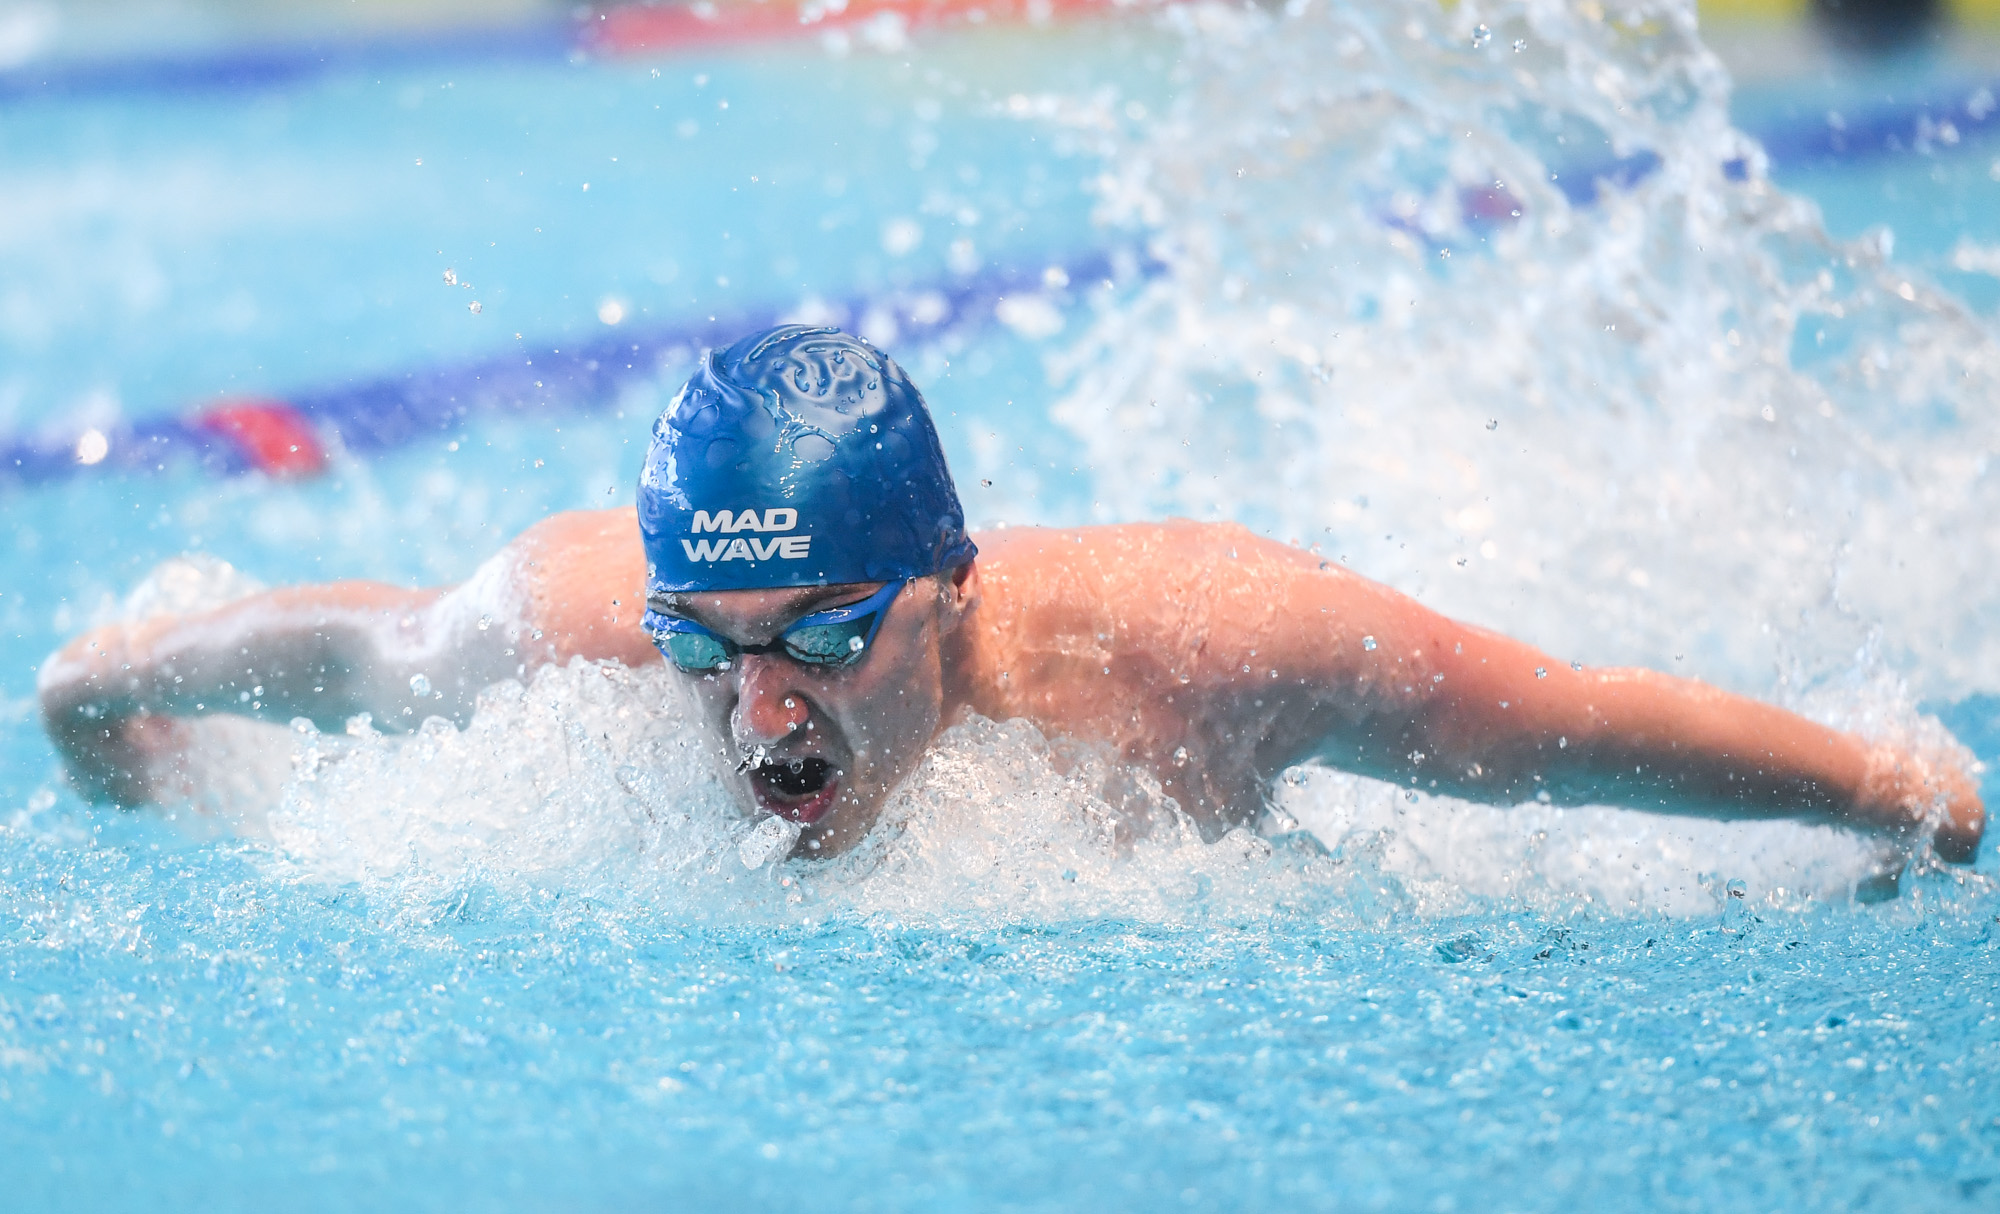 W Lublinie rozpoczęły się Akademickie Mistrzostwa Polski w pływaniu. Są już pierwsze medale (wideo, zdjęcia)